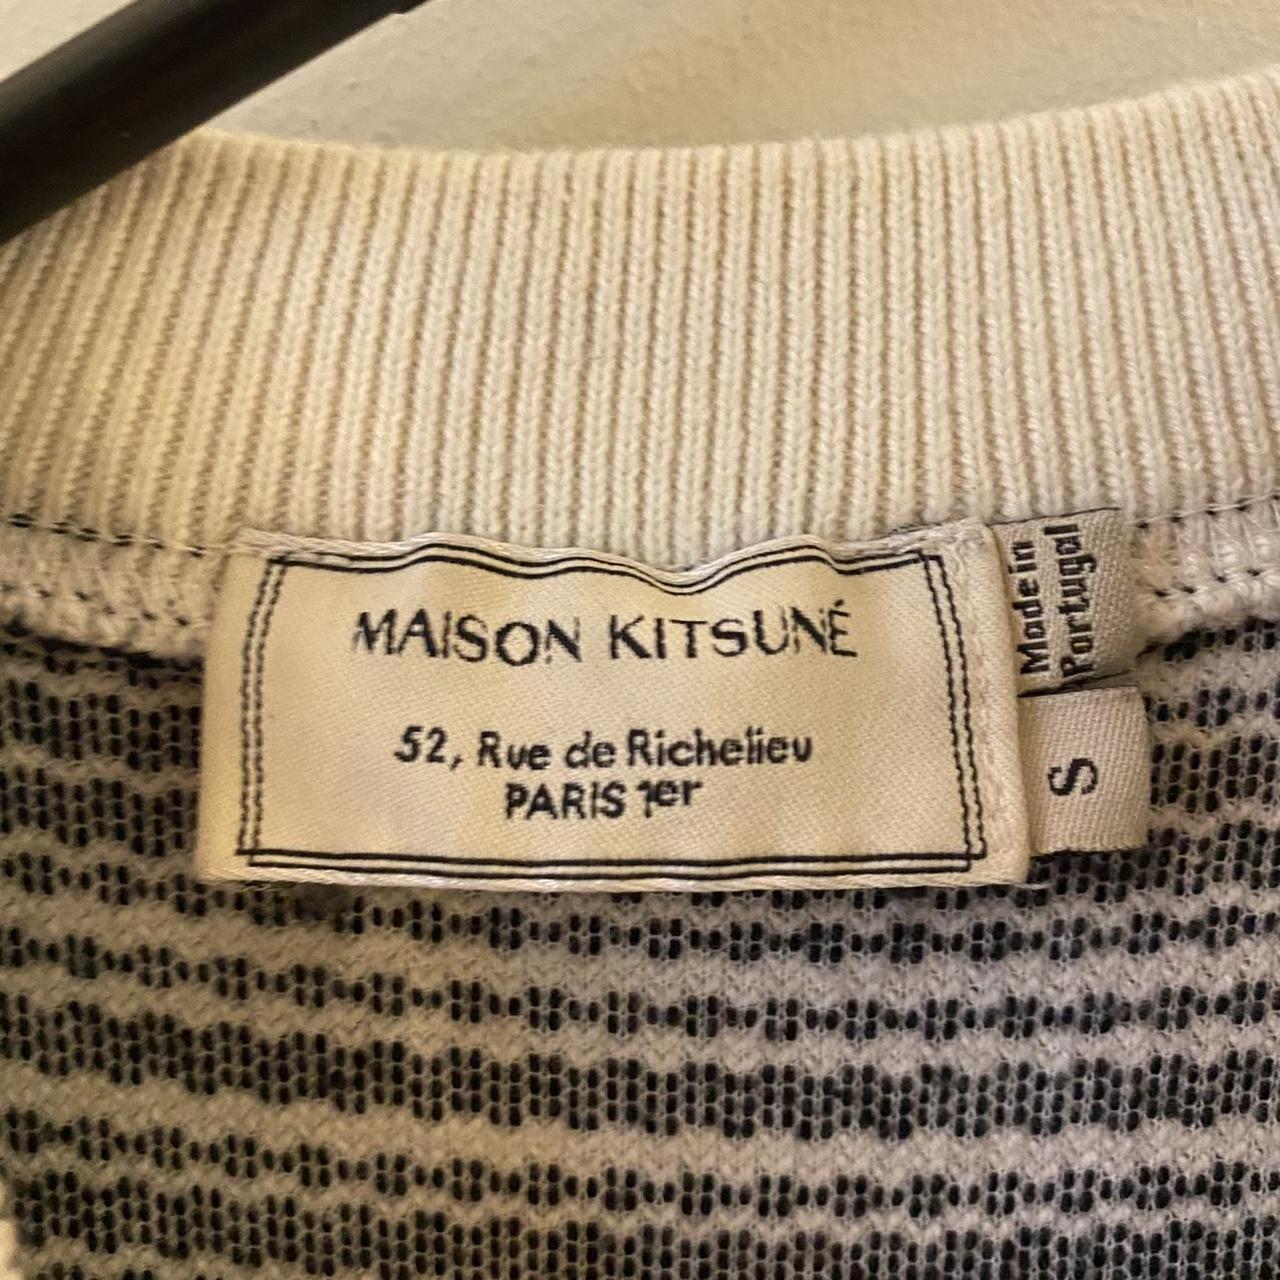 Product Image 3 - Maison kitsune ideal dress
Size S
Used